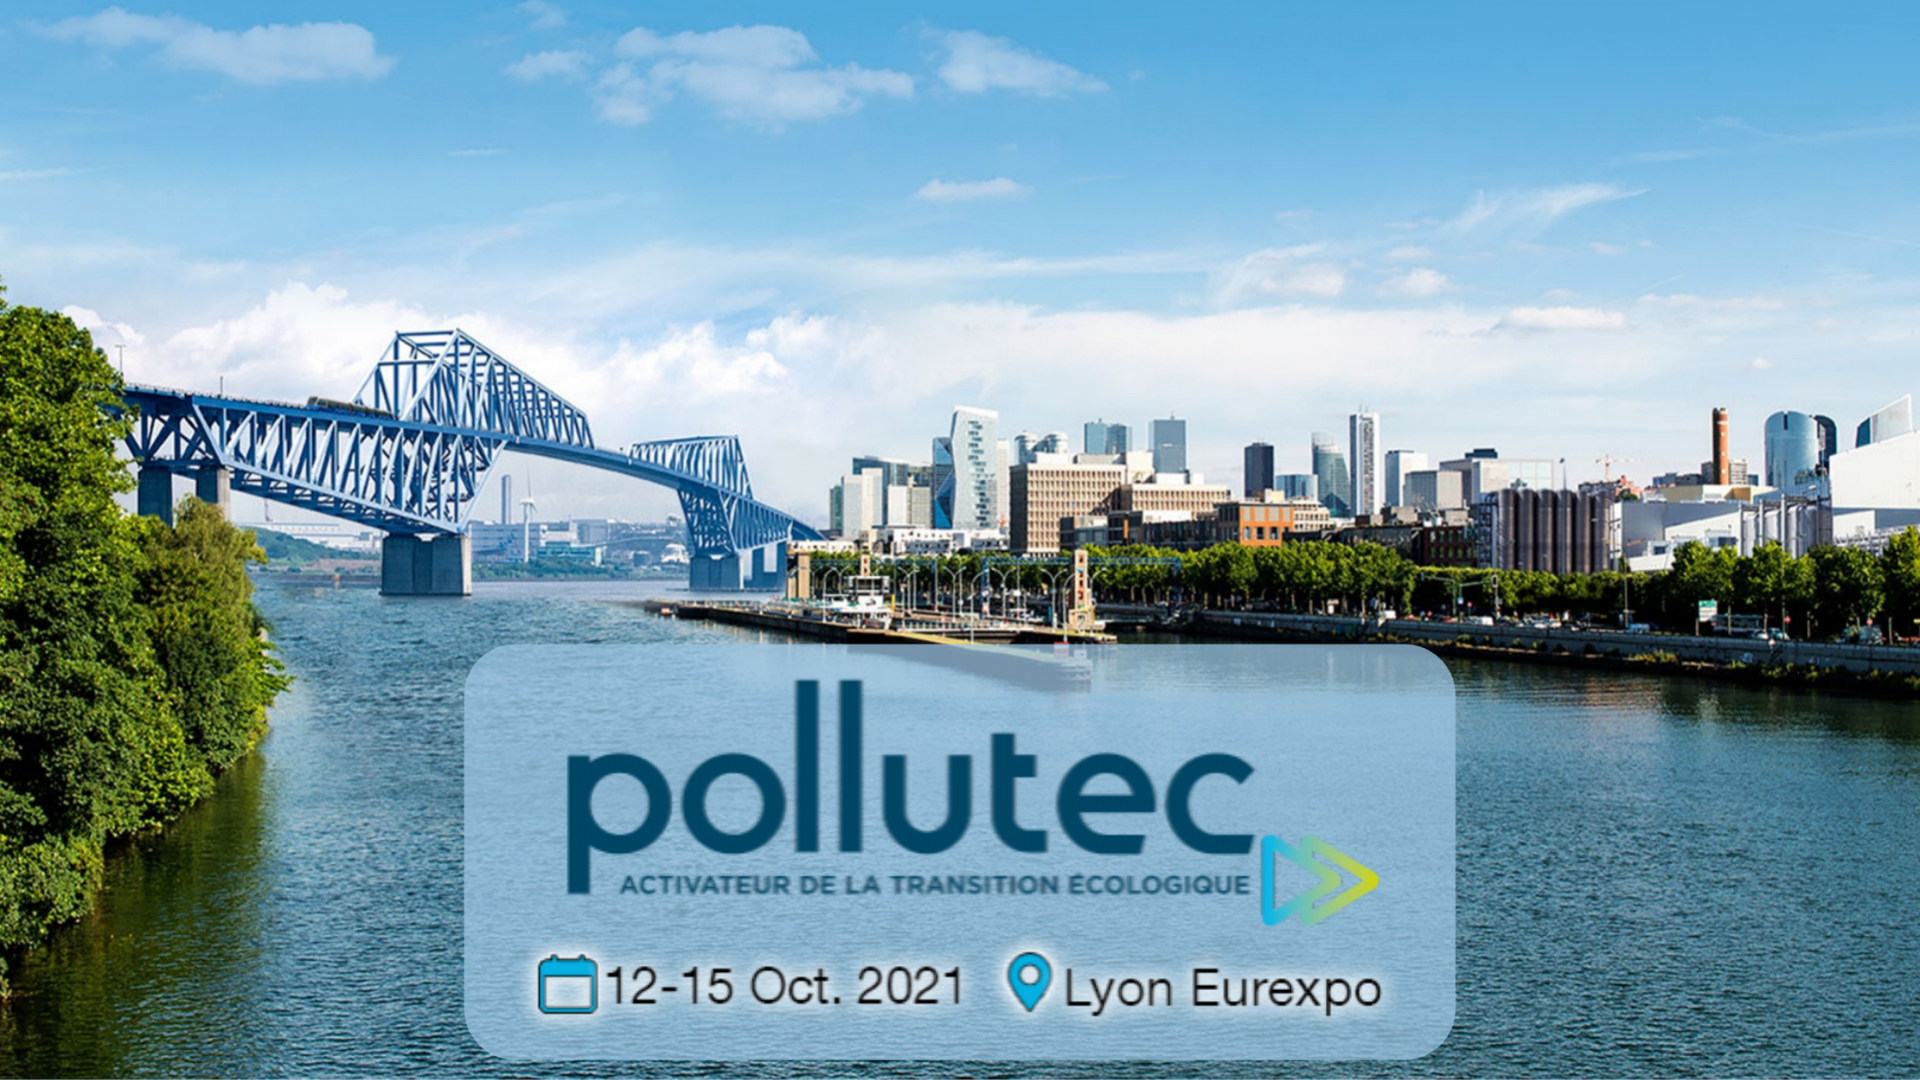 Participez au salon POLLUTEC 2021 avec GreenWin, du 12 au 15 octobre 2021, à Lyon